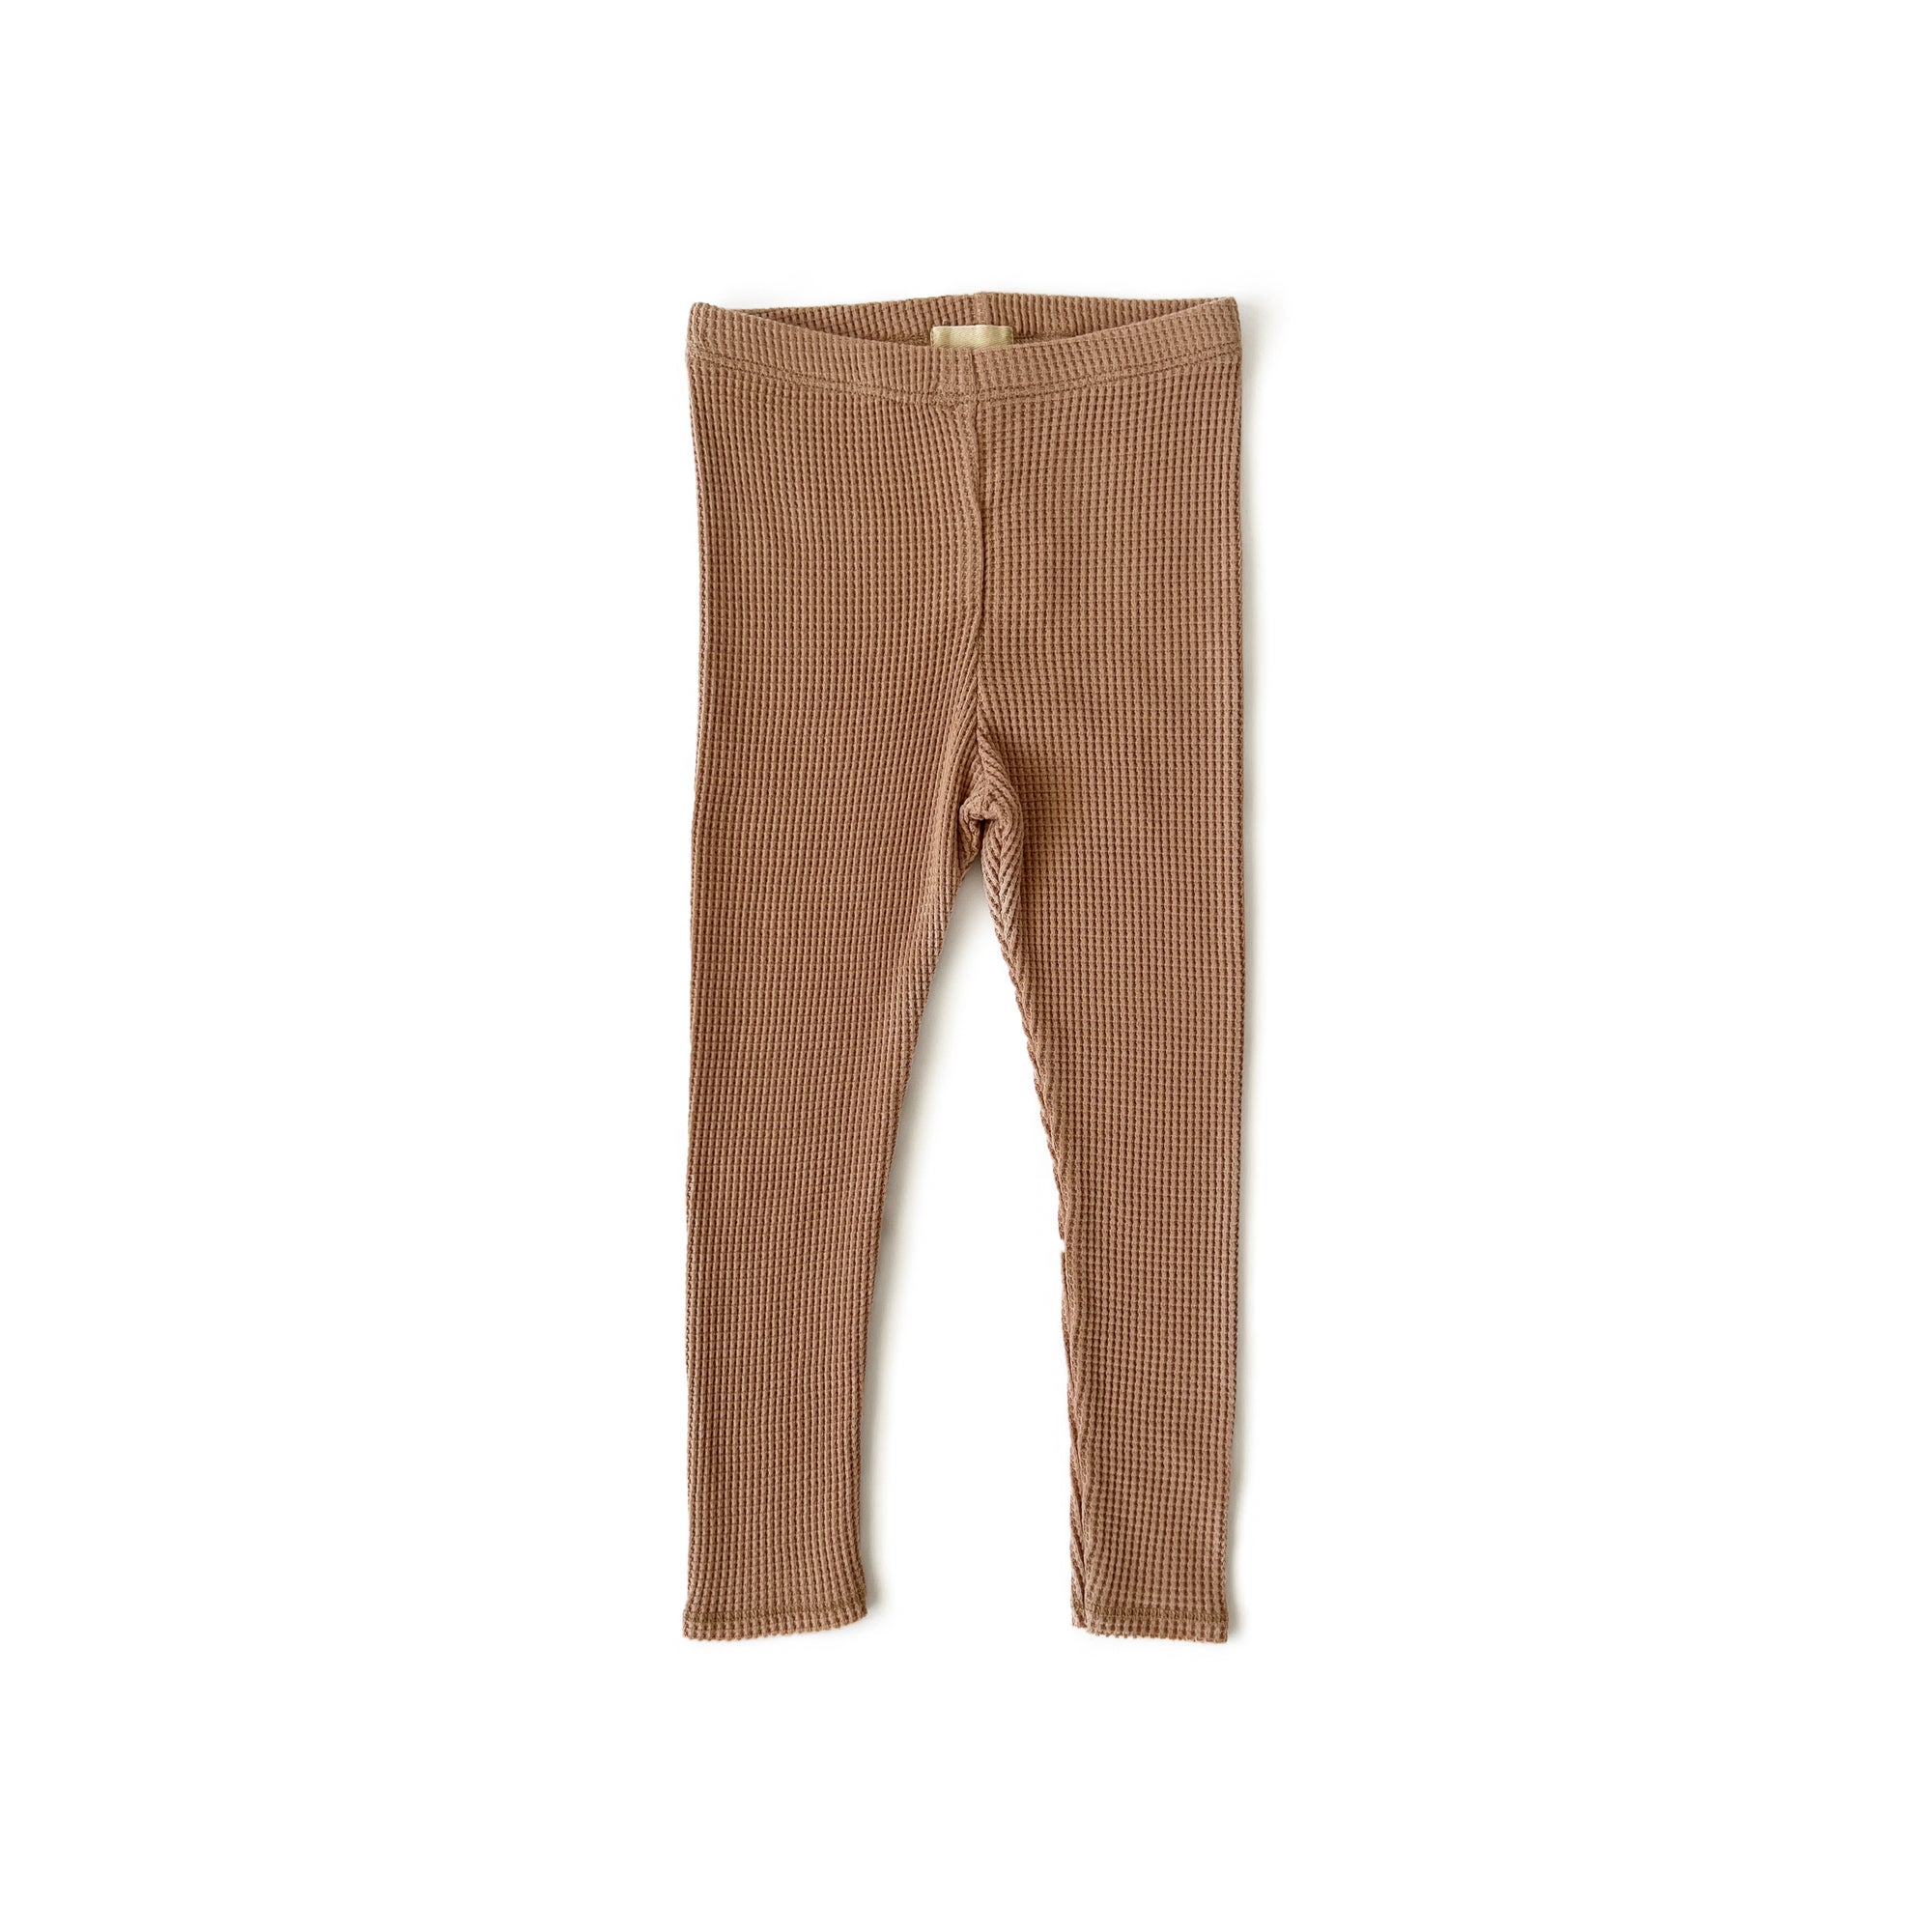 Brown thermal leggings